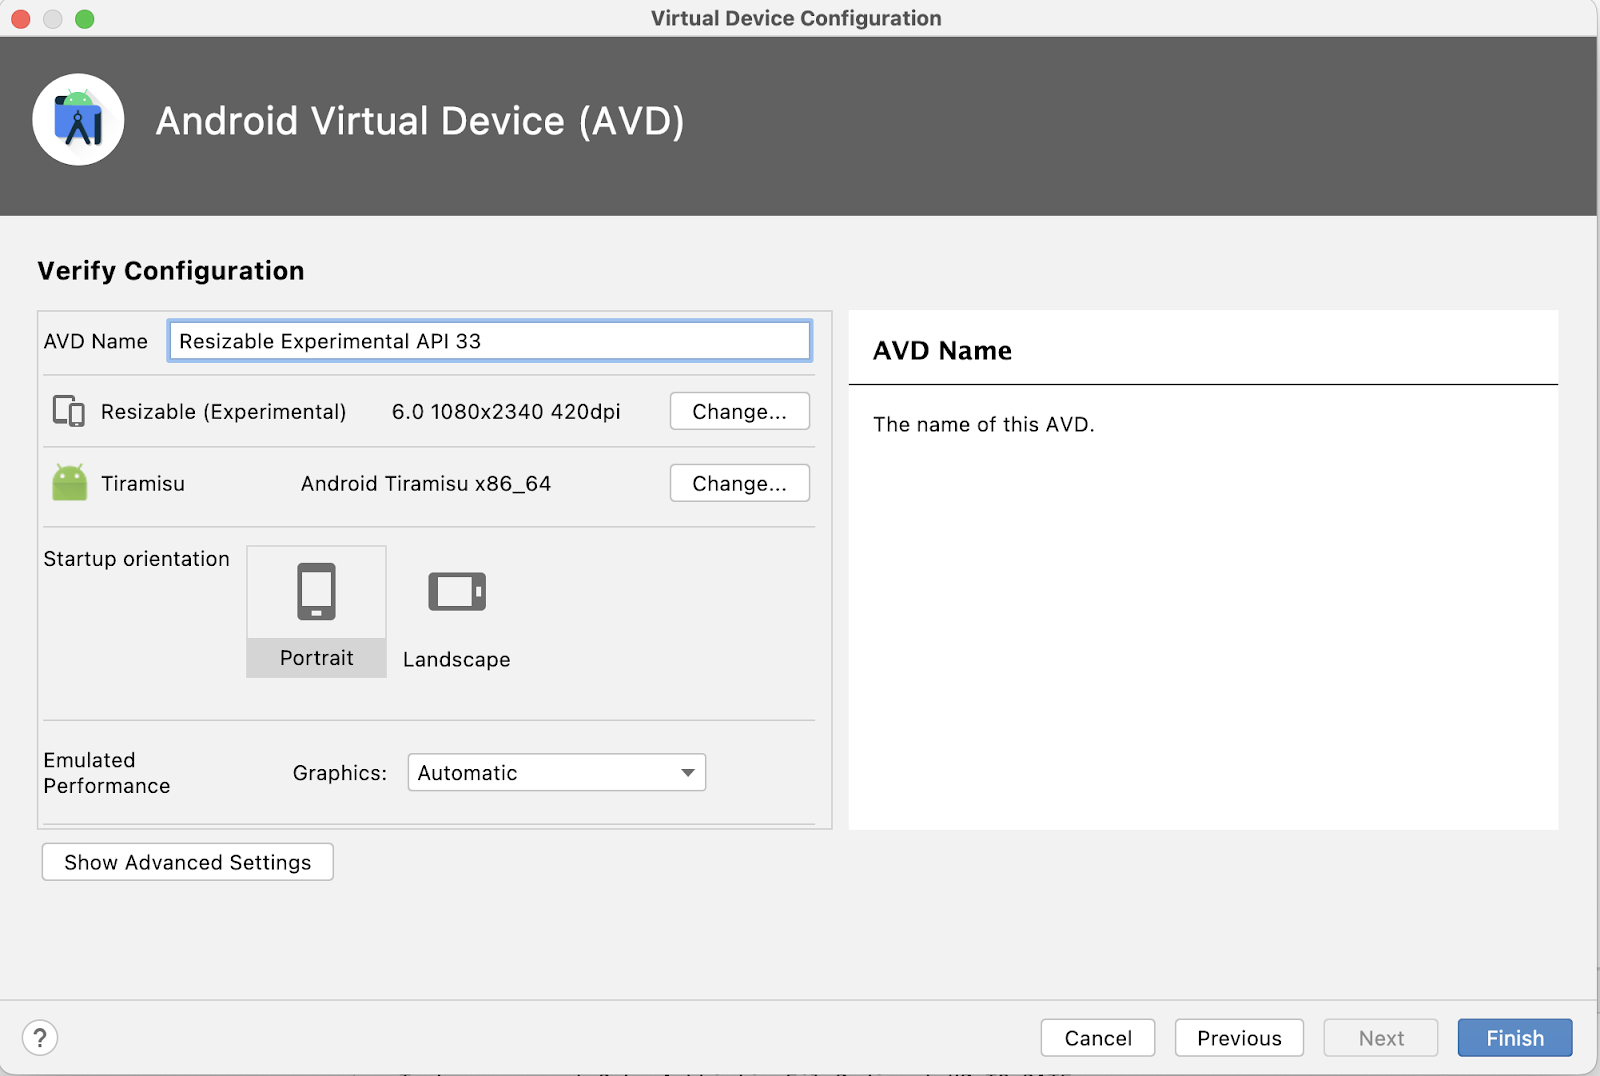 系统显示了 Android 虚拟设备 (AVD) 中的“Virtual Configration”屏幕。配置屏幕中包含一个用于输入 AVD 名称的文本字段。名称字段下方是一系列设备选项，包括设备定义（“Resizable [Experimental]”）、系统映像（“Tiramisu”）和屏幕方向（“Portrait”屏幕方向默认处于选中状态）。“Change”按钮显示在设备定义和系统映像信息的右侧，而“Landscape”选项显示在处于选中状态的“Portrait”屏幕方向选项的右侧。右下角有 4 个按钮：“Cancel”“Previous”“Next”（灰显，无法选择）和“Finish”。